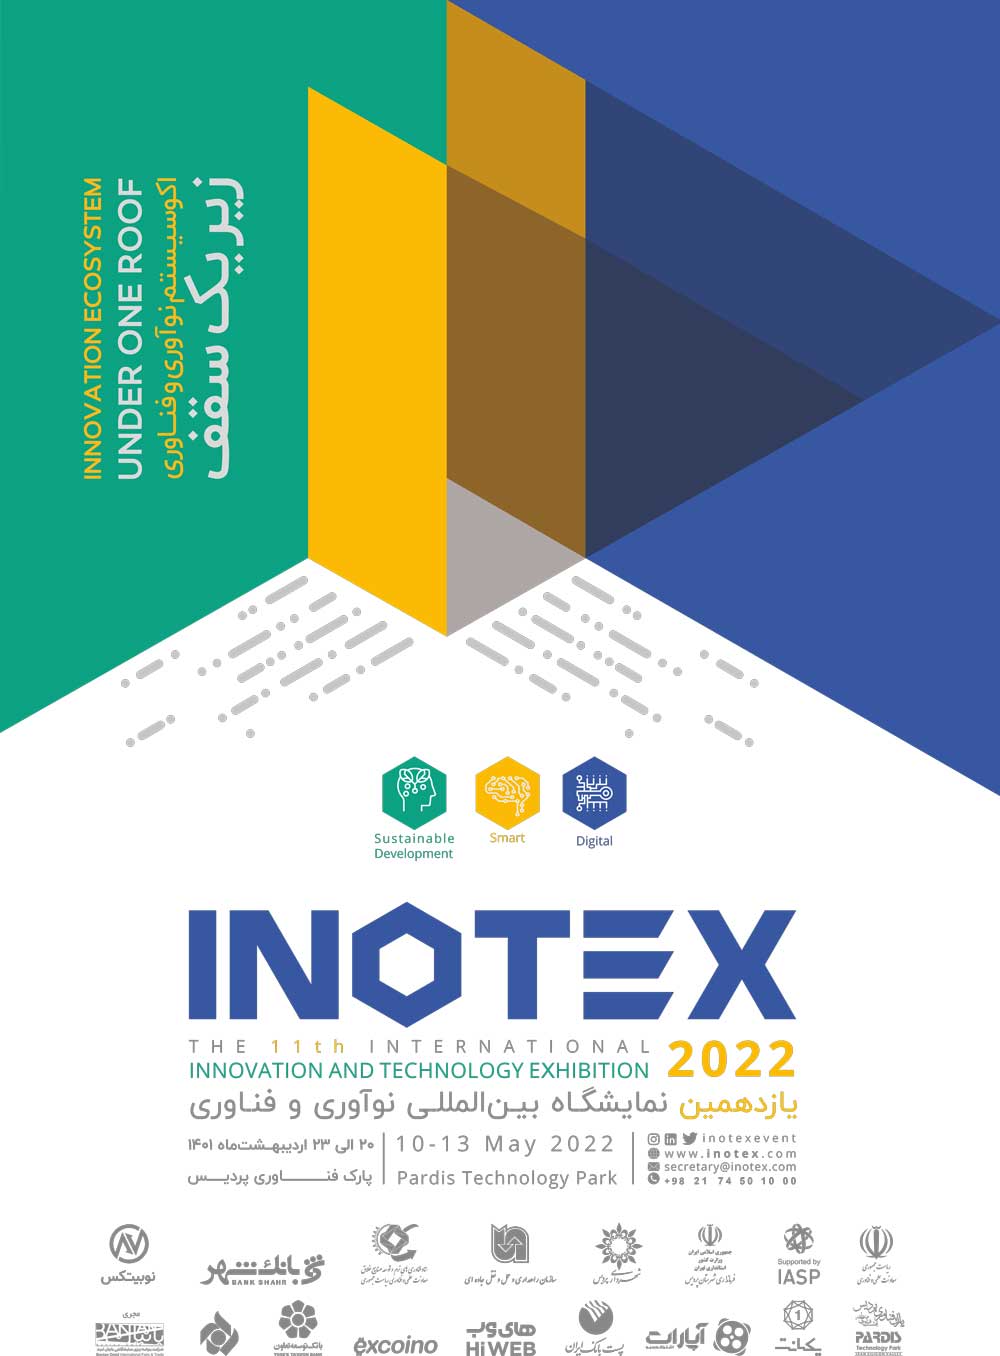 ثبت نام بازدیدکنندگان نمایشگاه اینوتکس 2022 آغاز شد